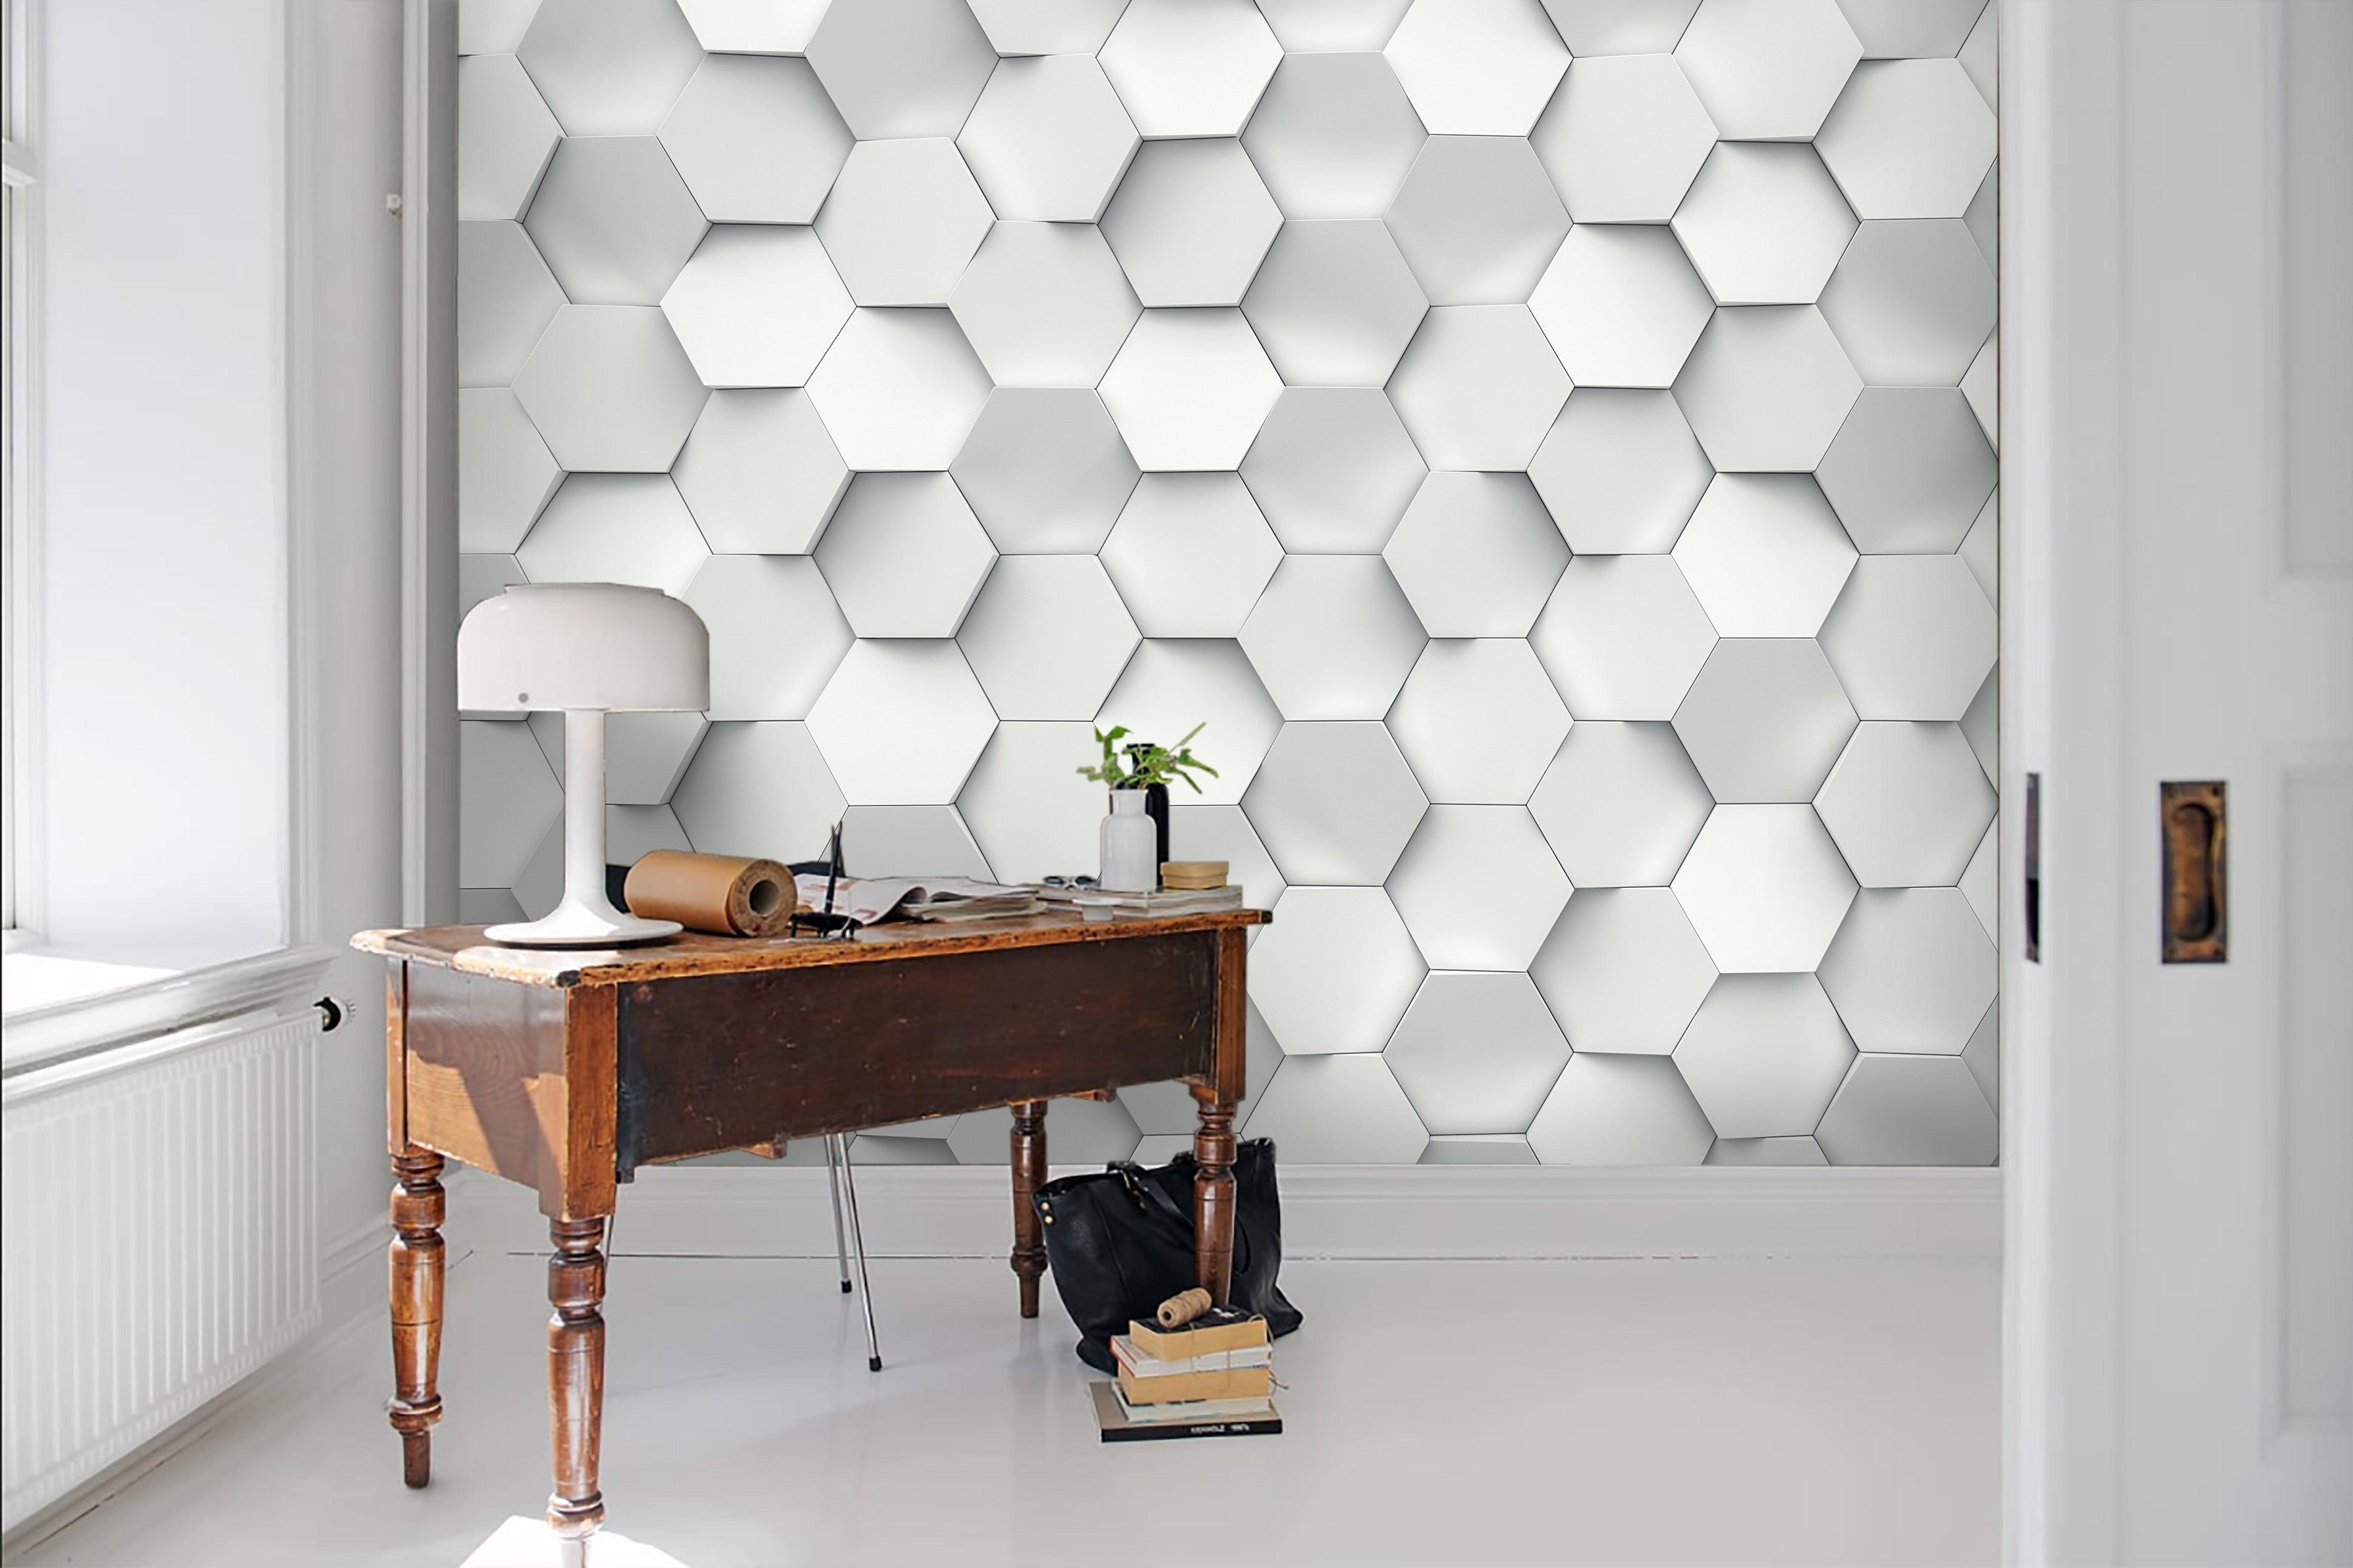 3D Hexagon White Pattern Combination  Wall Mural Wallpaper 57- Jess Art Decoration